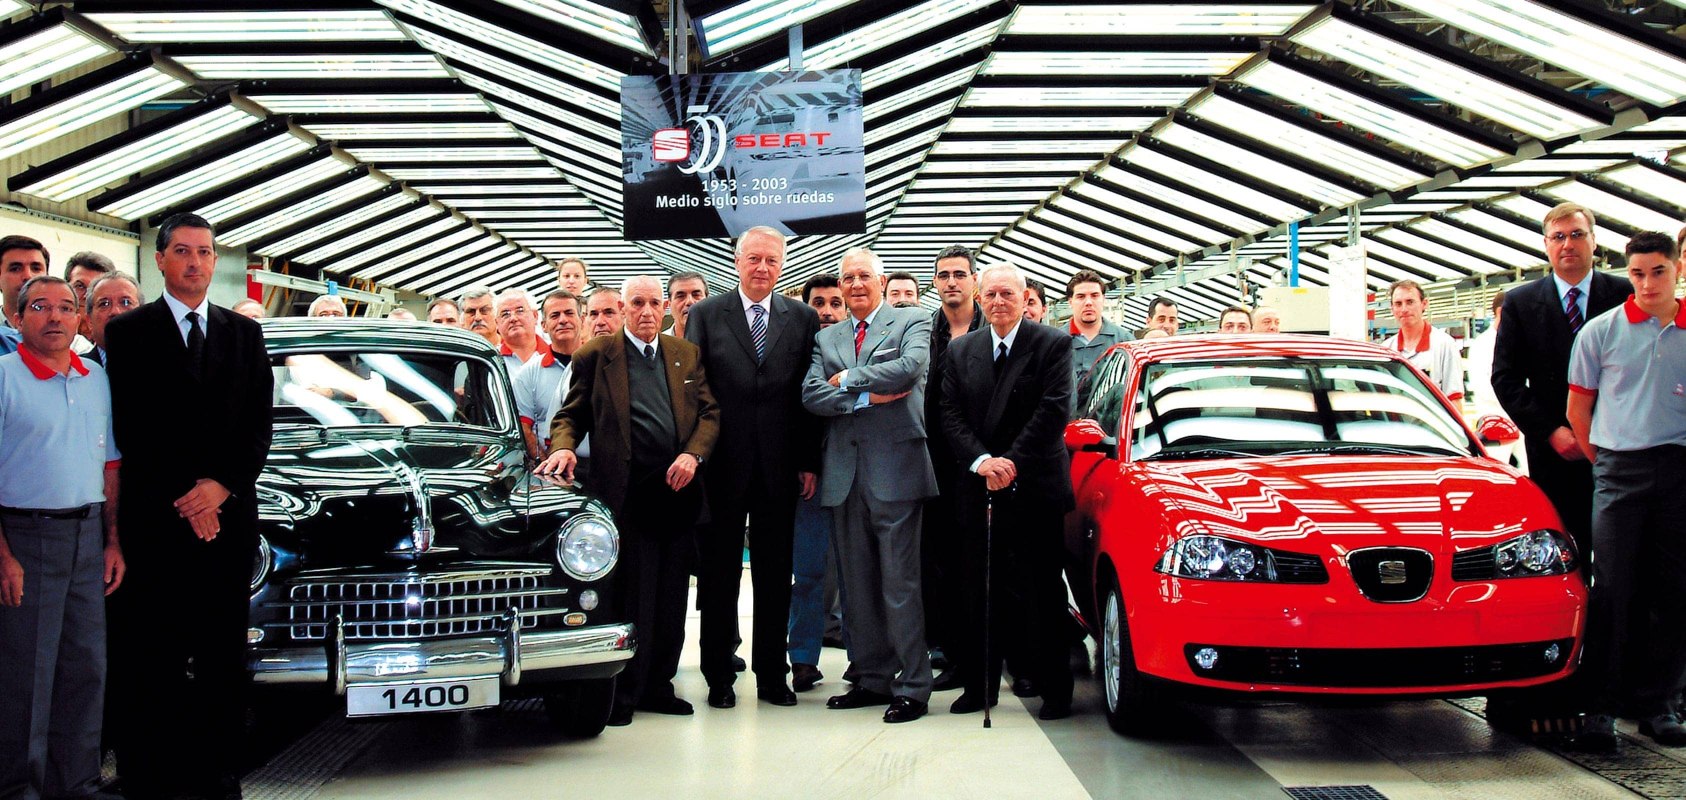 SEATi brändi ajalugu 2000ndatel - SEAT juhatuse liikmete paraadfoto